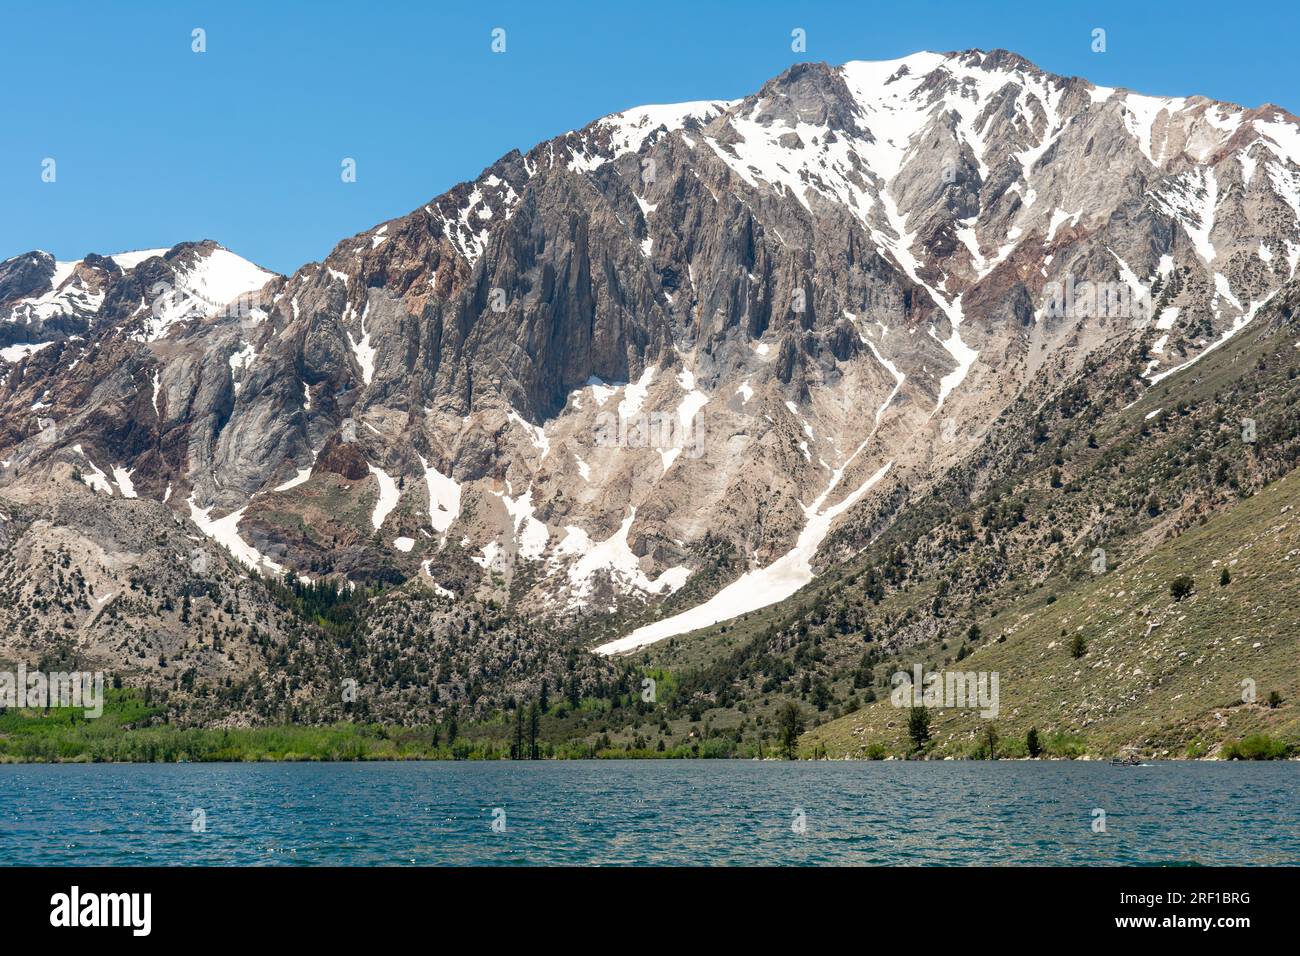 La tranquilla bellezza del lago Convict nelle alte Sierras Foto Stock